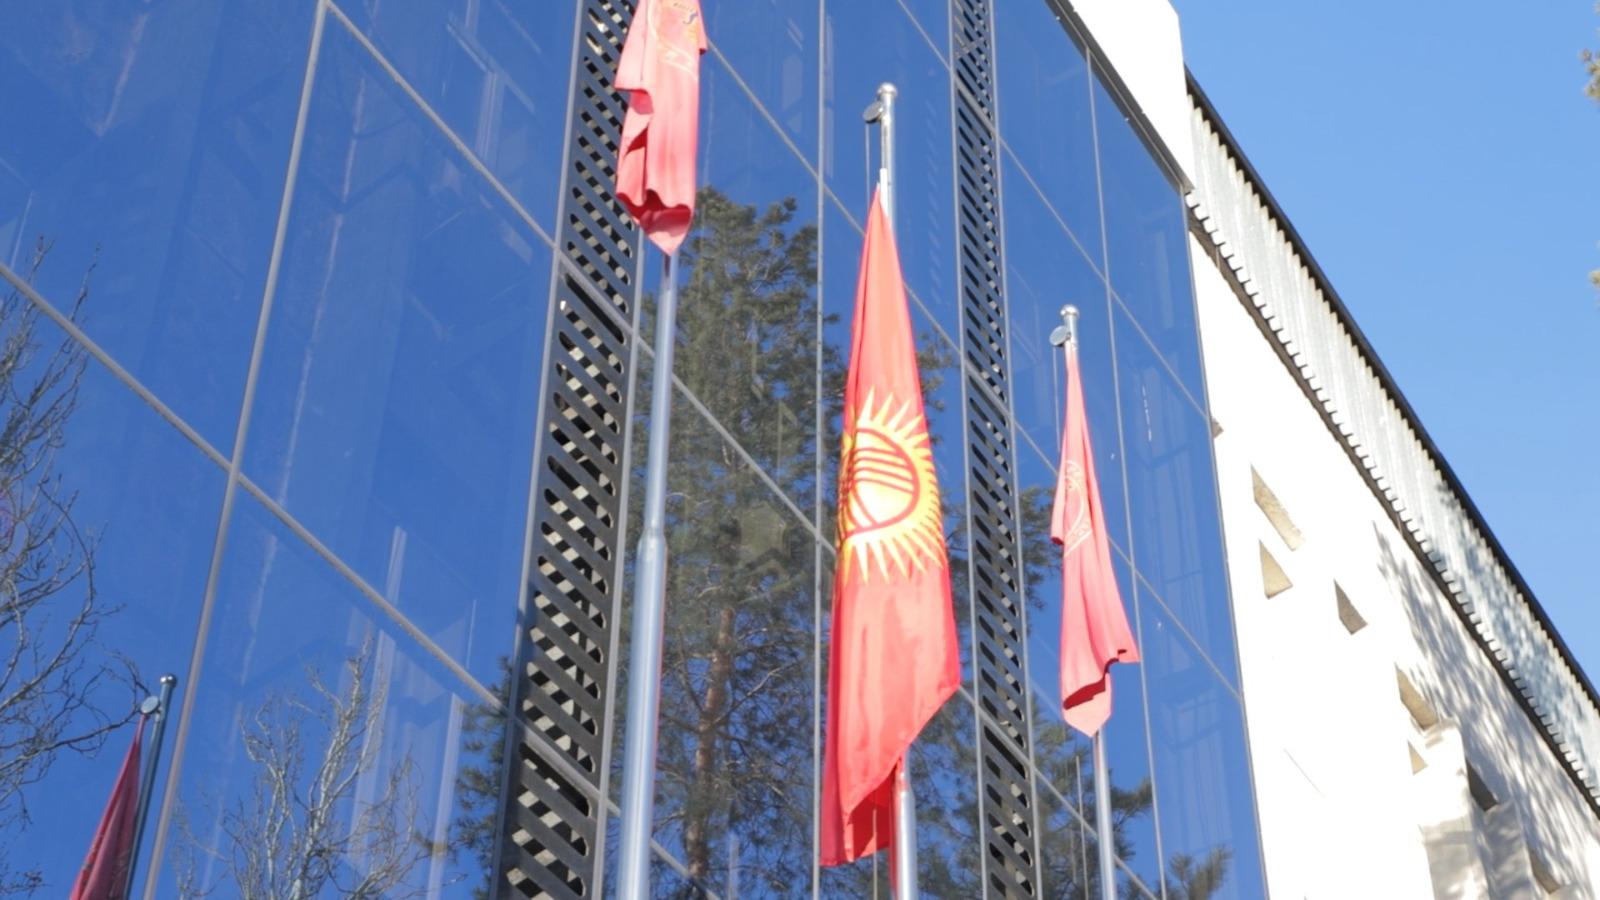 В Министерстве внутренних дел поднят новый флаг Кыргызской Республики